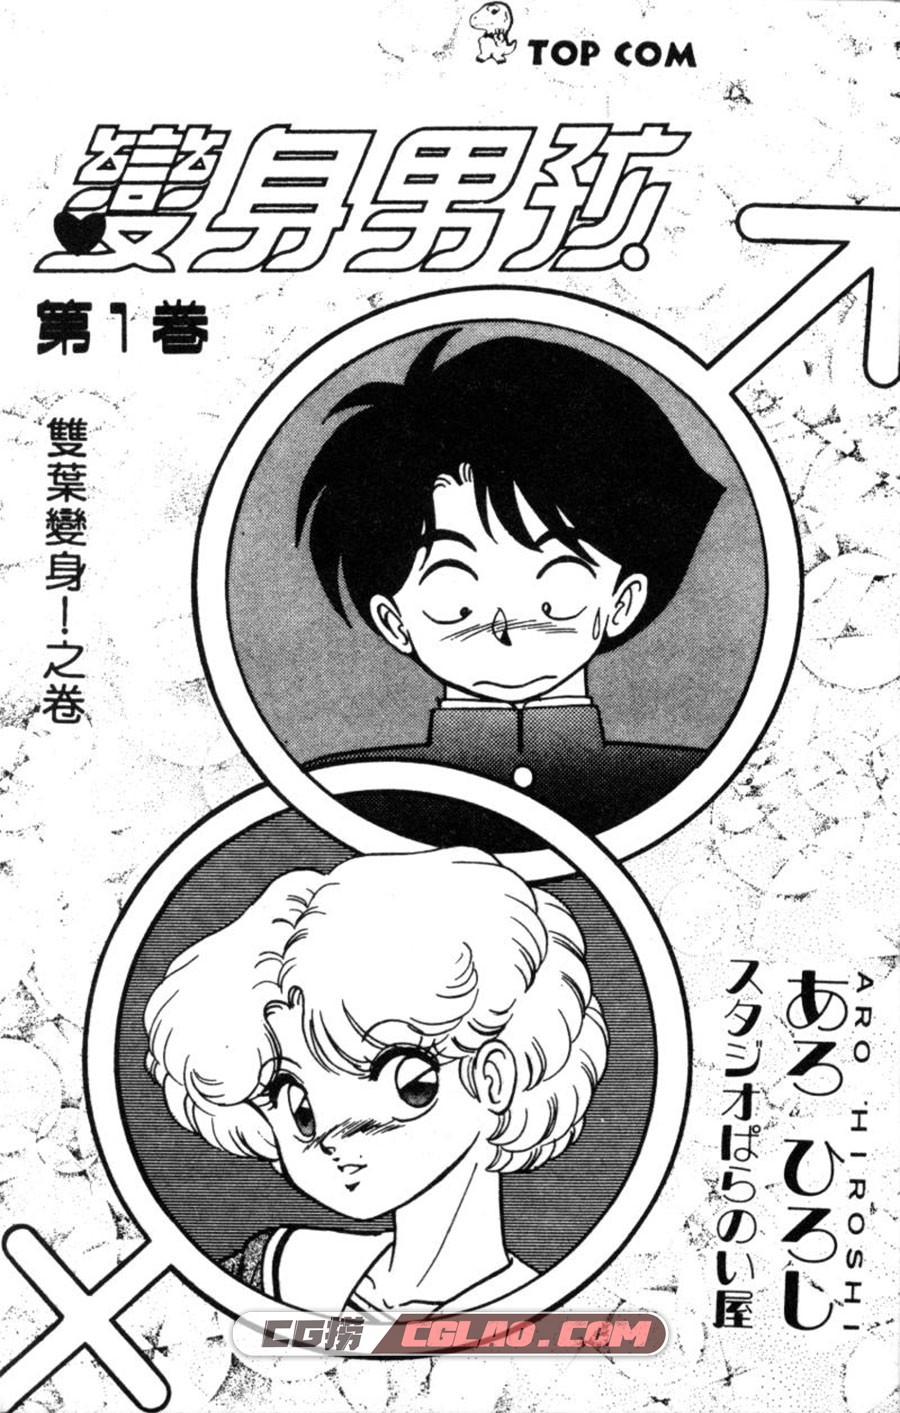 变身男孩 HiroshiAro 1-8卷 漫画全集完结下载 百度网盘下载,01-002.jpg